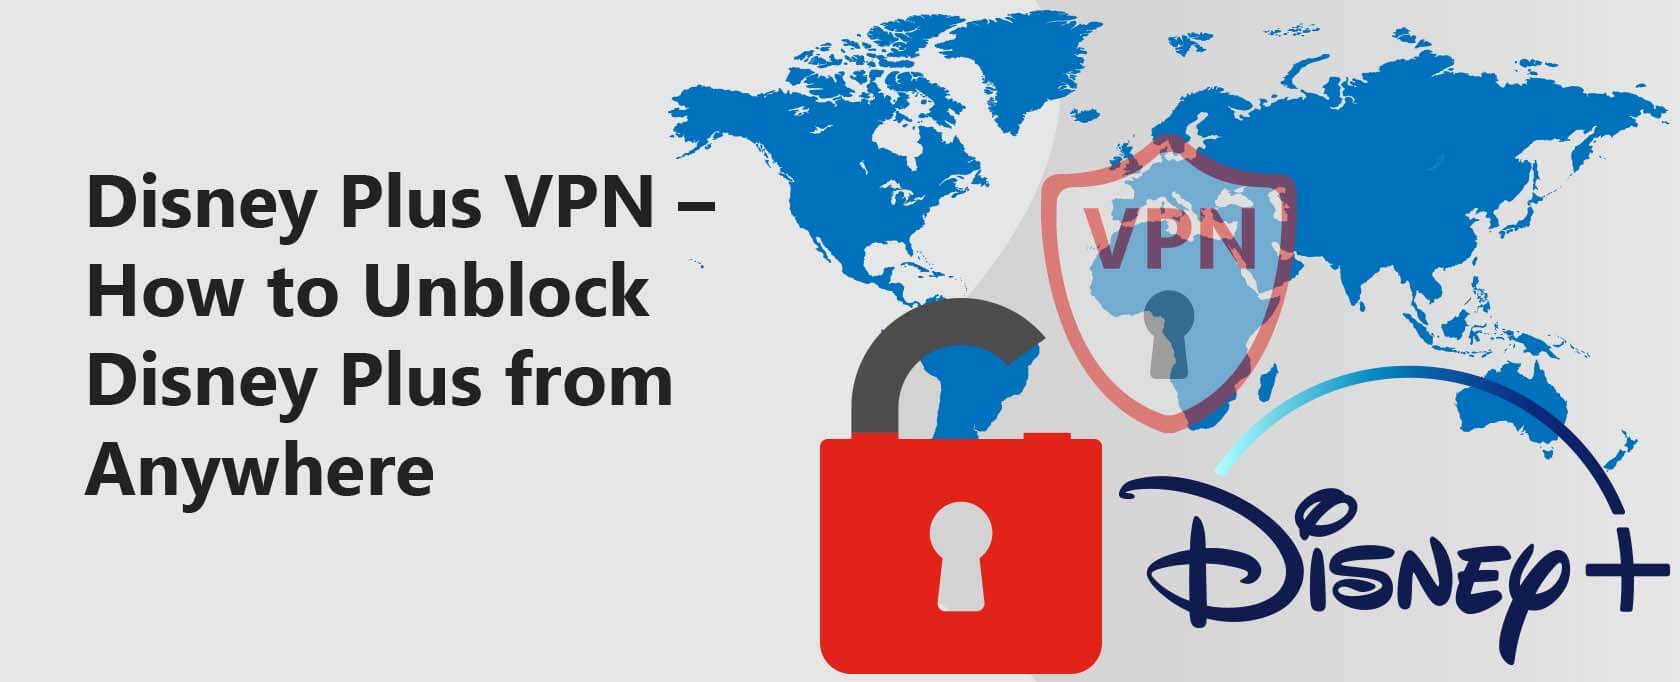 الفي بي ان الخاص بديزني بلس (Disney Plus VPN) – كيفية إلغاء حجب ديزني بلس (Disney Plus) من أي مكان